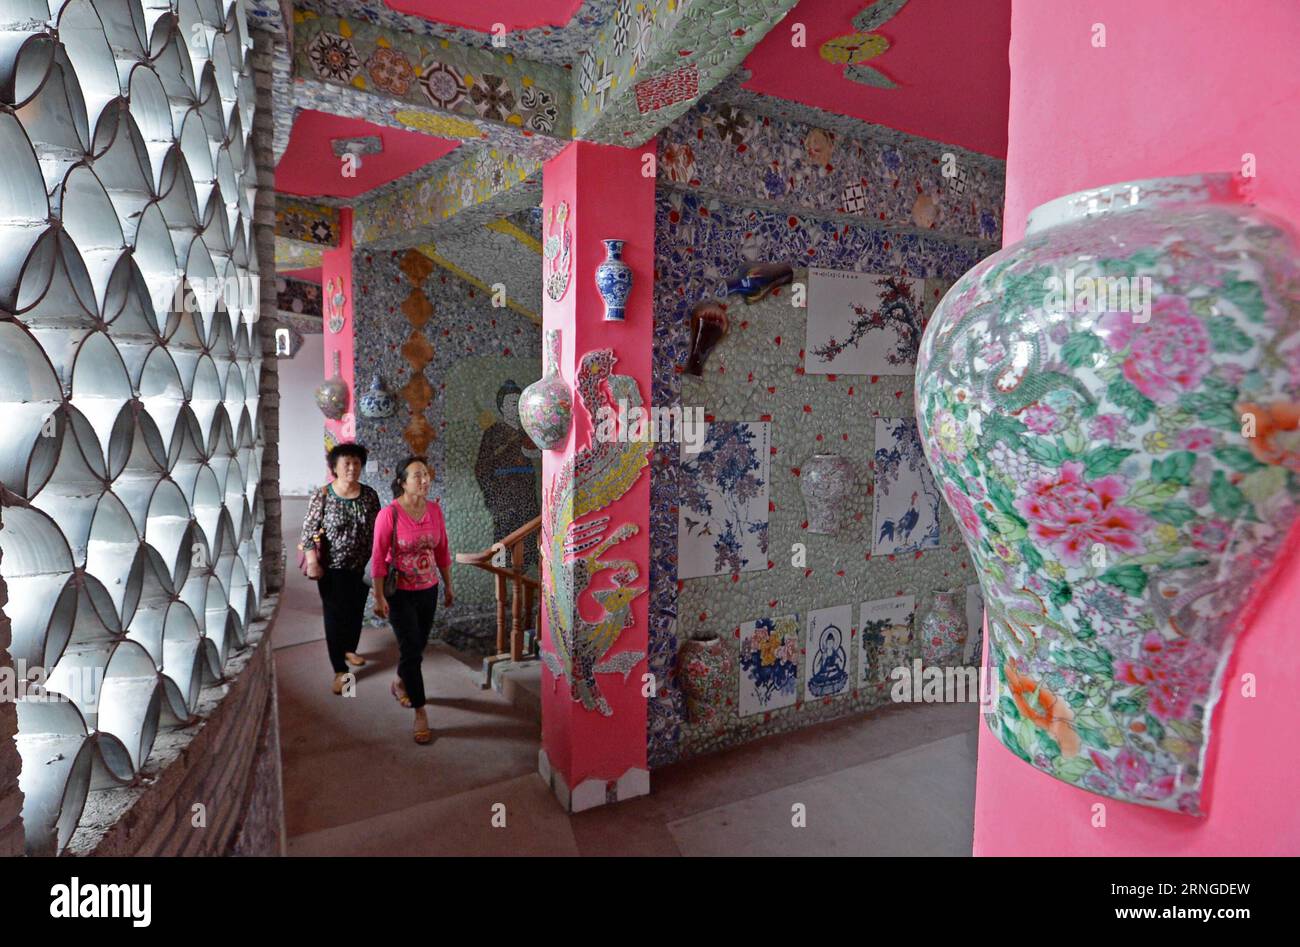 (160922) -- NANCHANG, 21 septembre 2016 -- des gens visitent un palais procelain dans le village de Xinping du comté de Fuliang à Jingdezhen, province du Jiangxi dans l'est de la Chine, le 21 septembre 2016. Le villageois de 86 ans Yu Ermei a passé cinq ans à construire ce palais de porcelaine. Le bâtiment circulaire de trois étages est décoré de plus de 60 000 pièces de porcelaine. (zkr) CHINA-JIANGXI-JINGDEZHEN-PORCELAINE PALACE(CN) WanxXiang PUBLICATIONxNOTxINxCHN Nanchang sept 21 2016 célébrités visitent un palais procesain dans le village de Xinping du comté de Fuliang dans Jingdezhen Chine orientale S Jiangxi province sept 21 2016 l'année 86 OL Banque D'Images